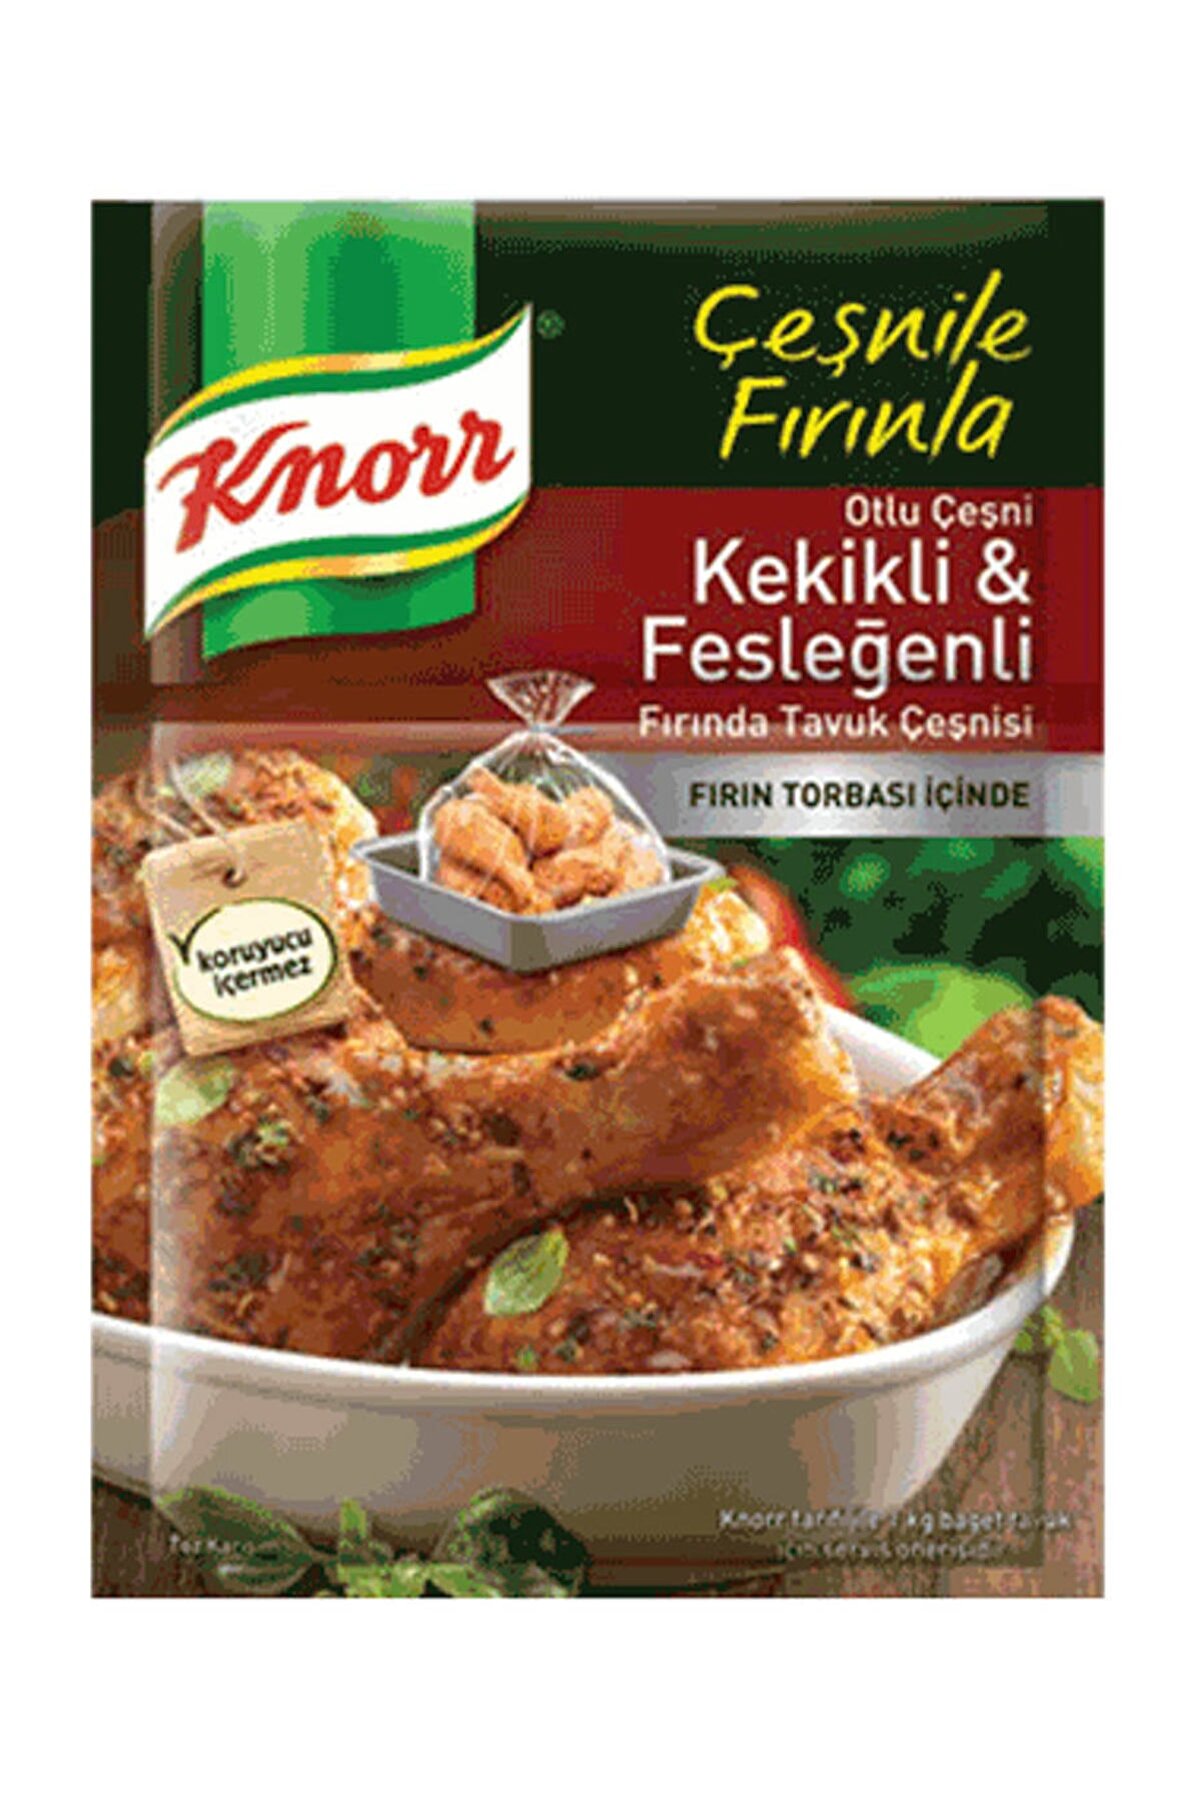 Knorr Kekikli ve Fesleğenli Fırında Tavuk Çeşnisi 32 gr